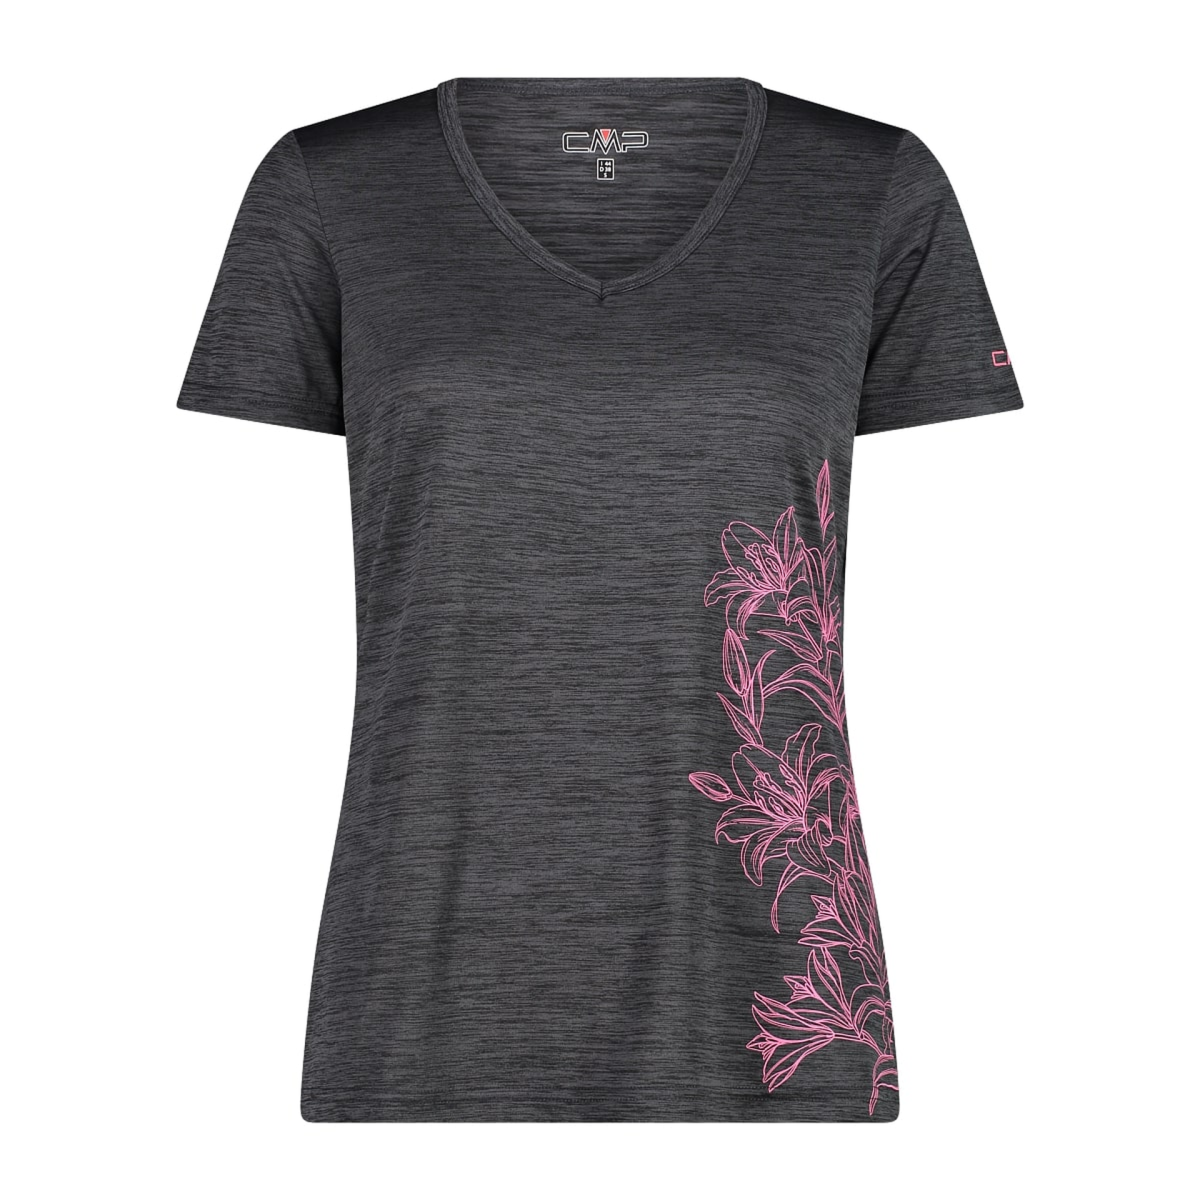 CMP Damen Shirt Light Jersey Print Shirt 39T6136 antracite meliert - pink fluo